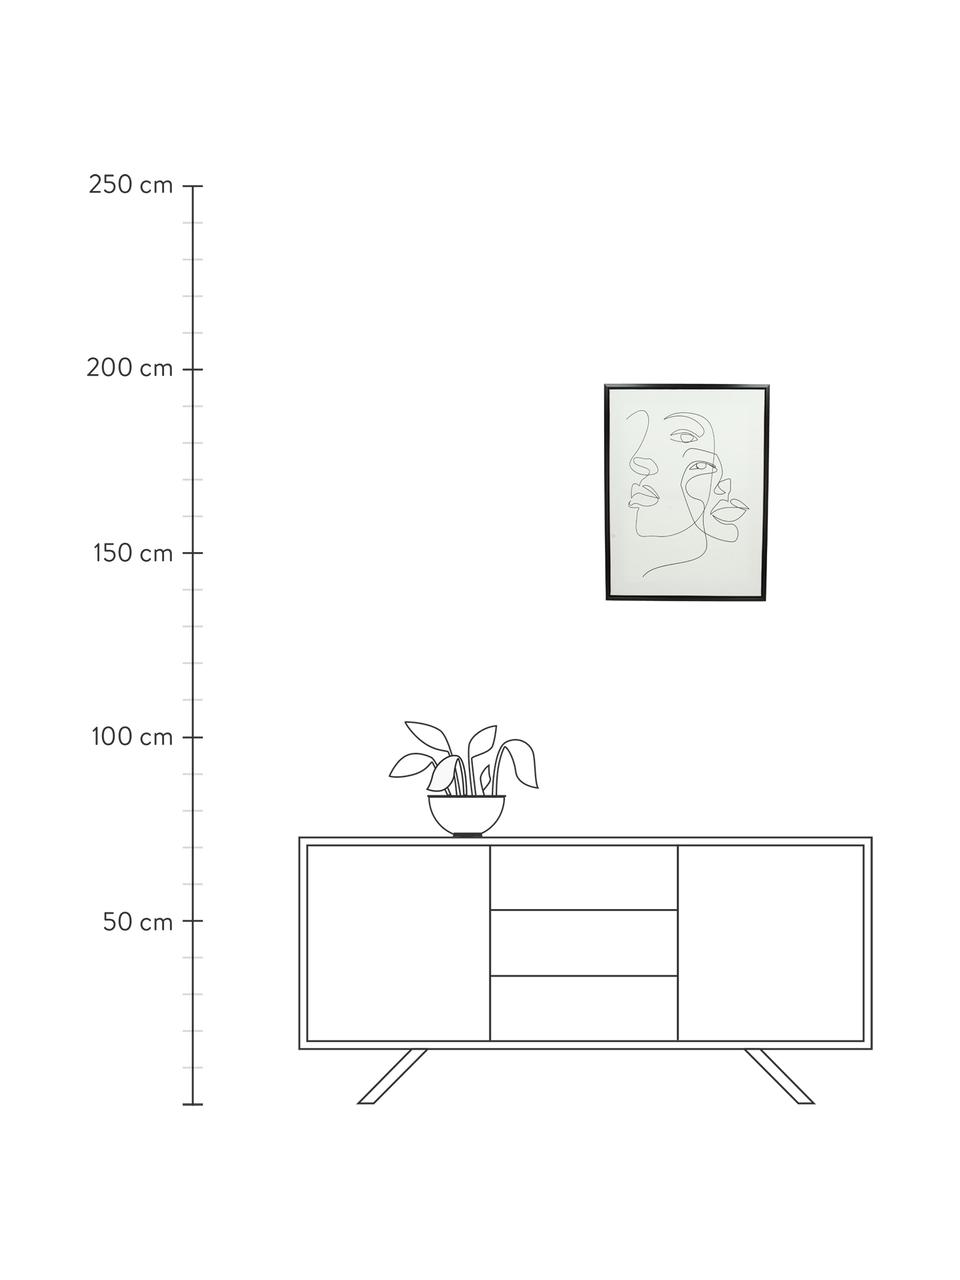 Gerahmter Leinwanddruck Aventurine, Rahmen: Kunststoff, Bild: Digitaldruck auf Leinen, Weiß, Schwarz, B 45 x H 60 cm